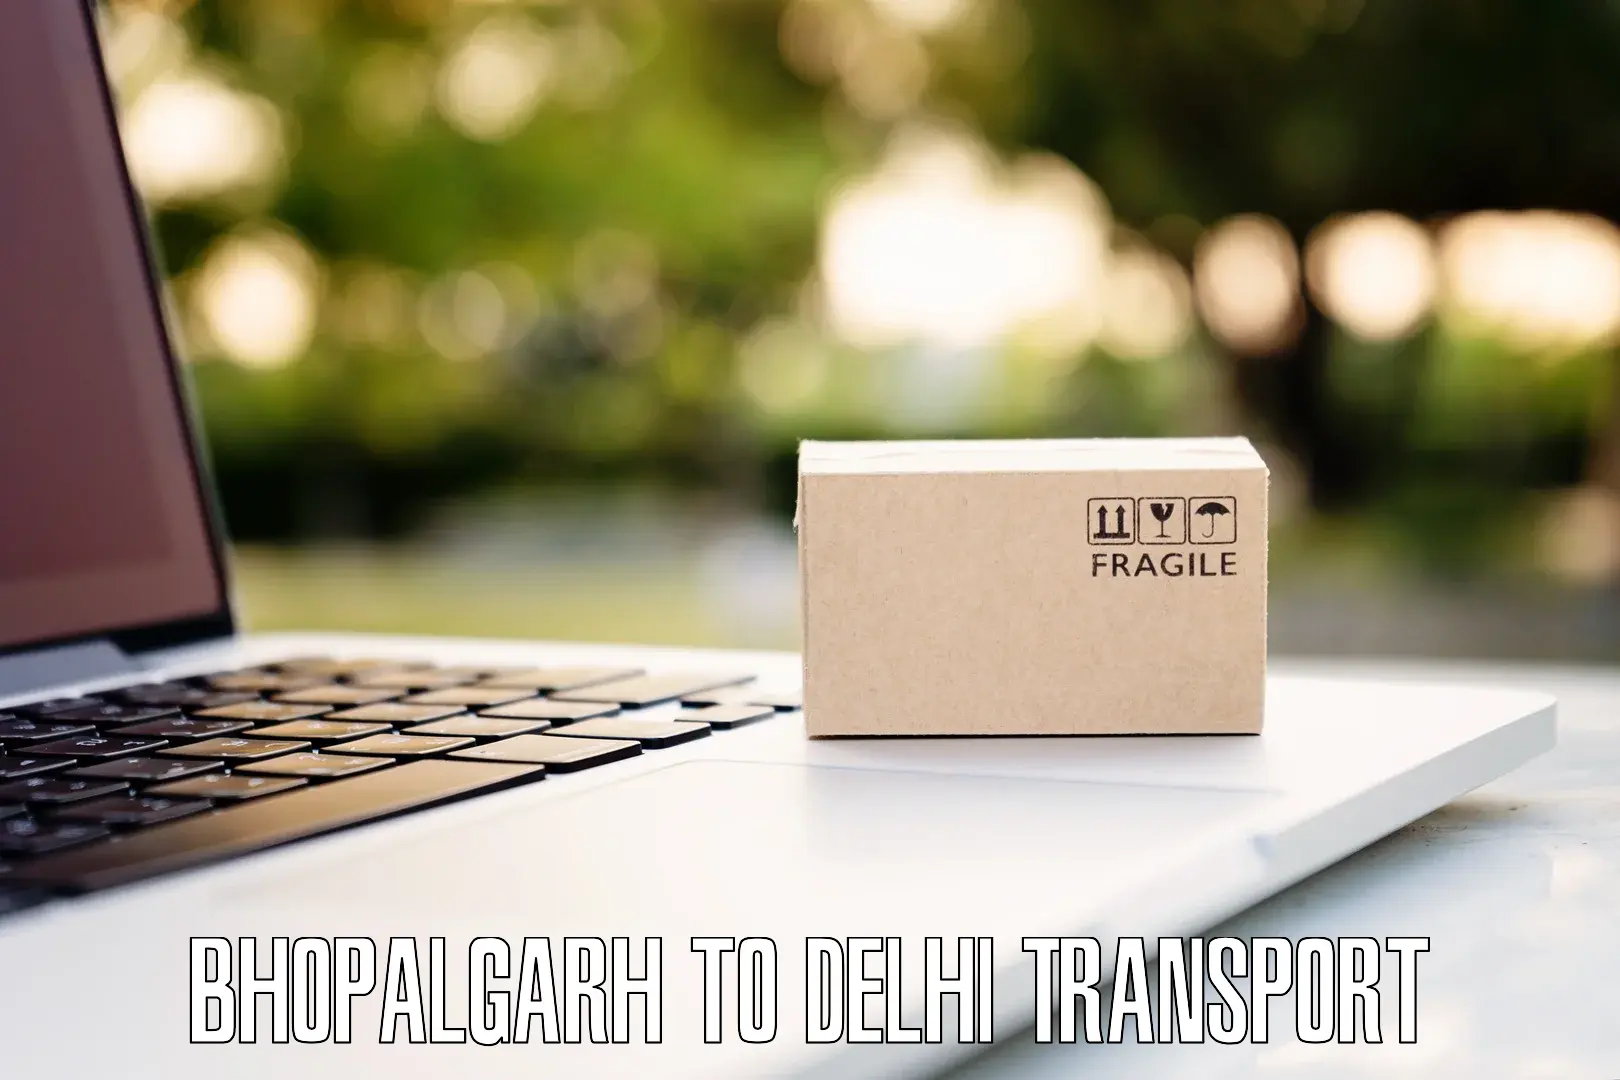 Two wheeler parcel service Bhopalgarh to NIT Delhi